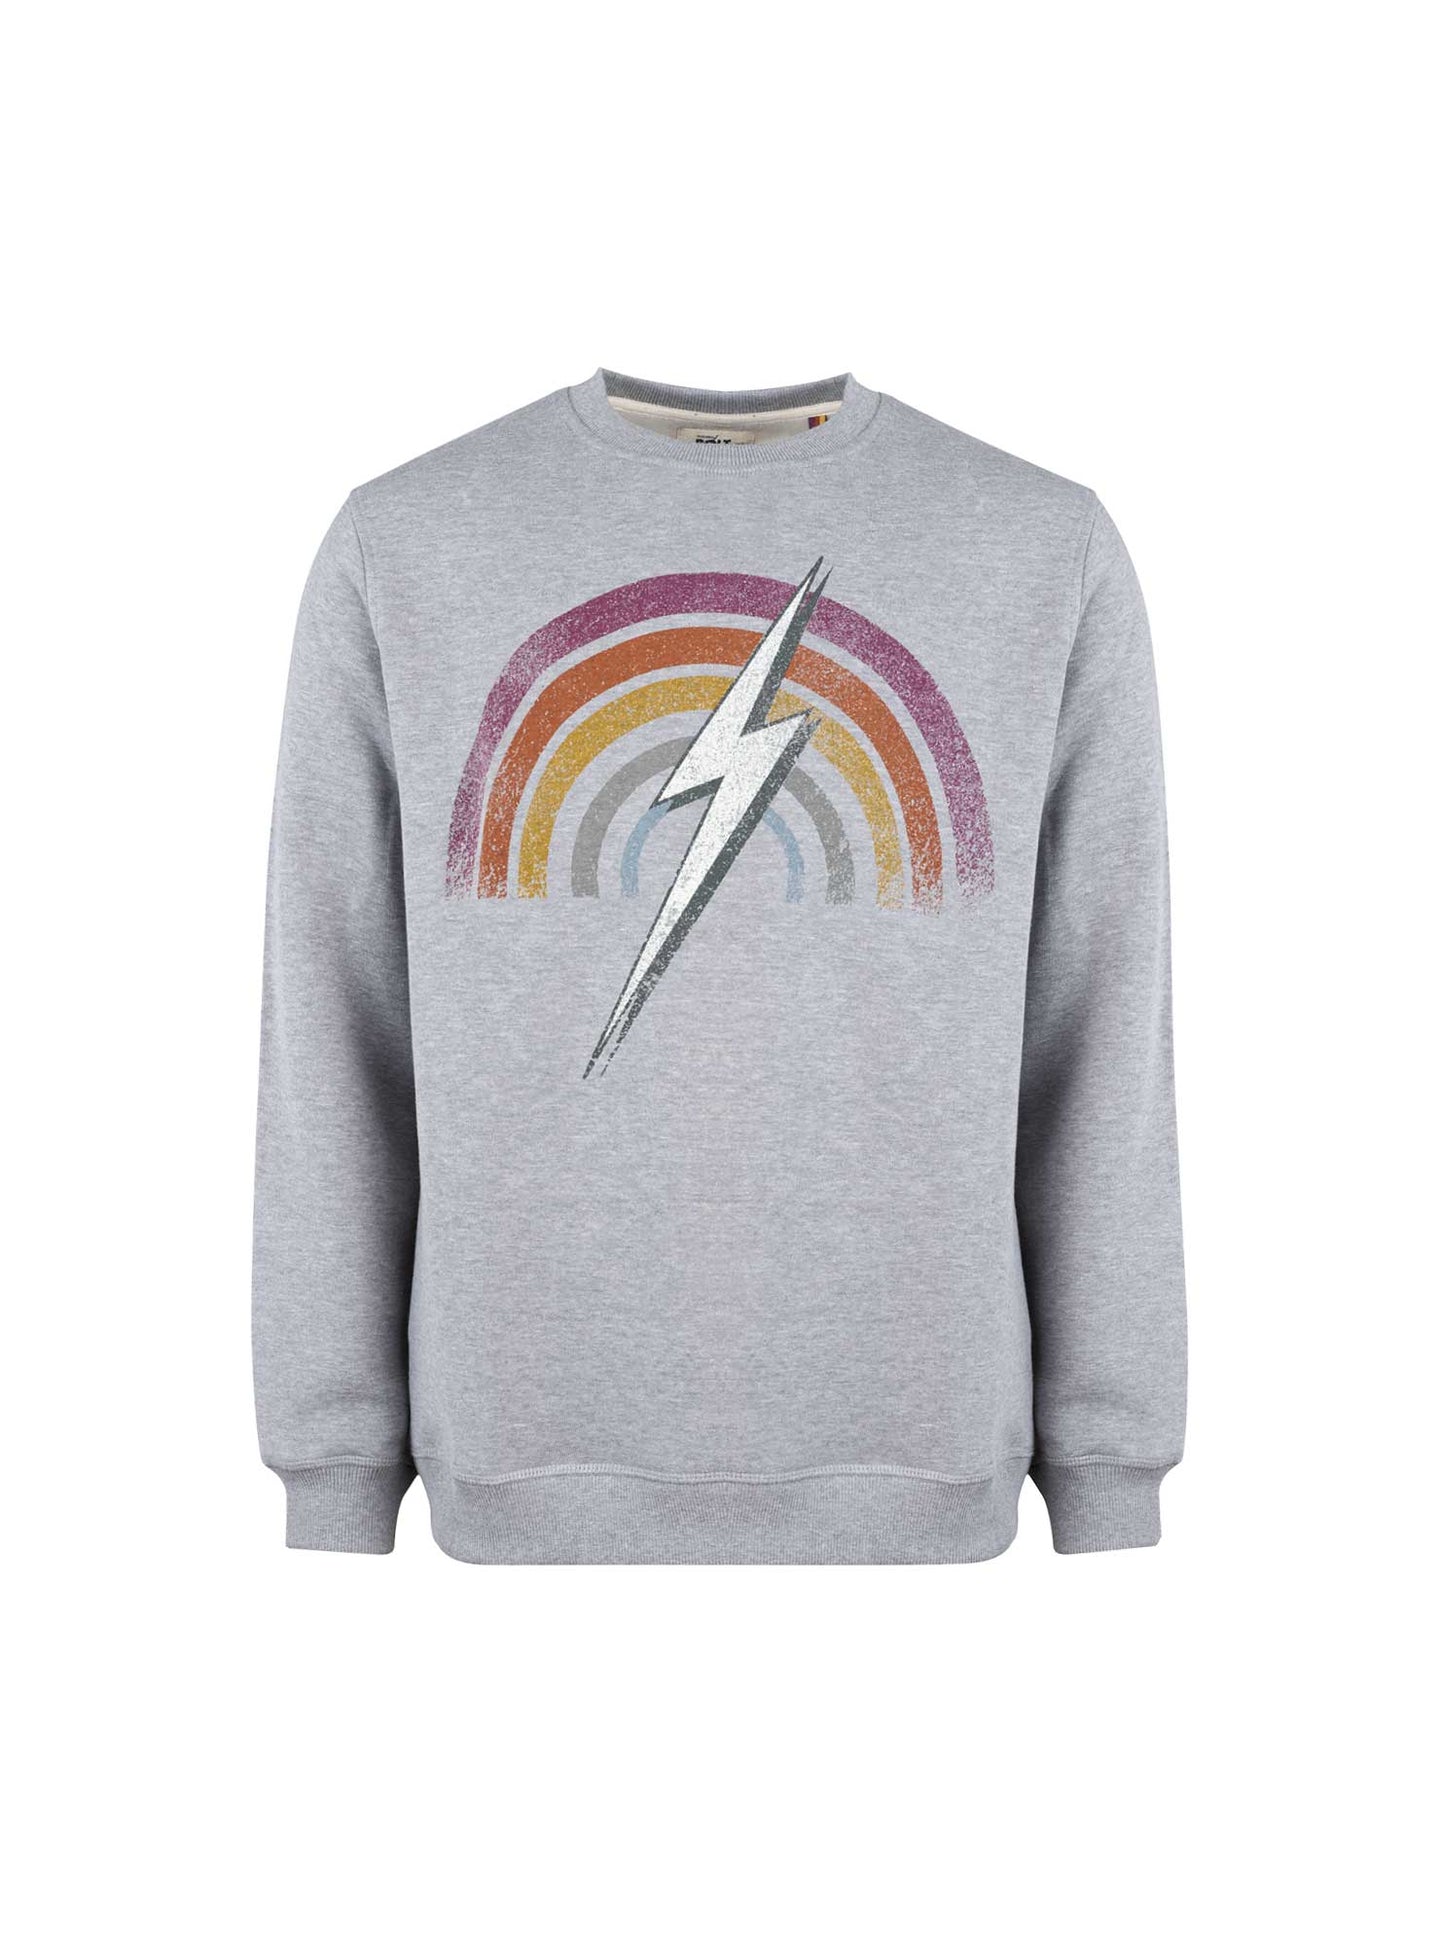 Sweatshirt Lightning Bolt  Rainbow Crew - Confortável e de felpa de qualidade portuguesa sem capuz | Sport Zone MKP